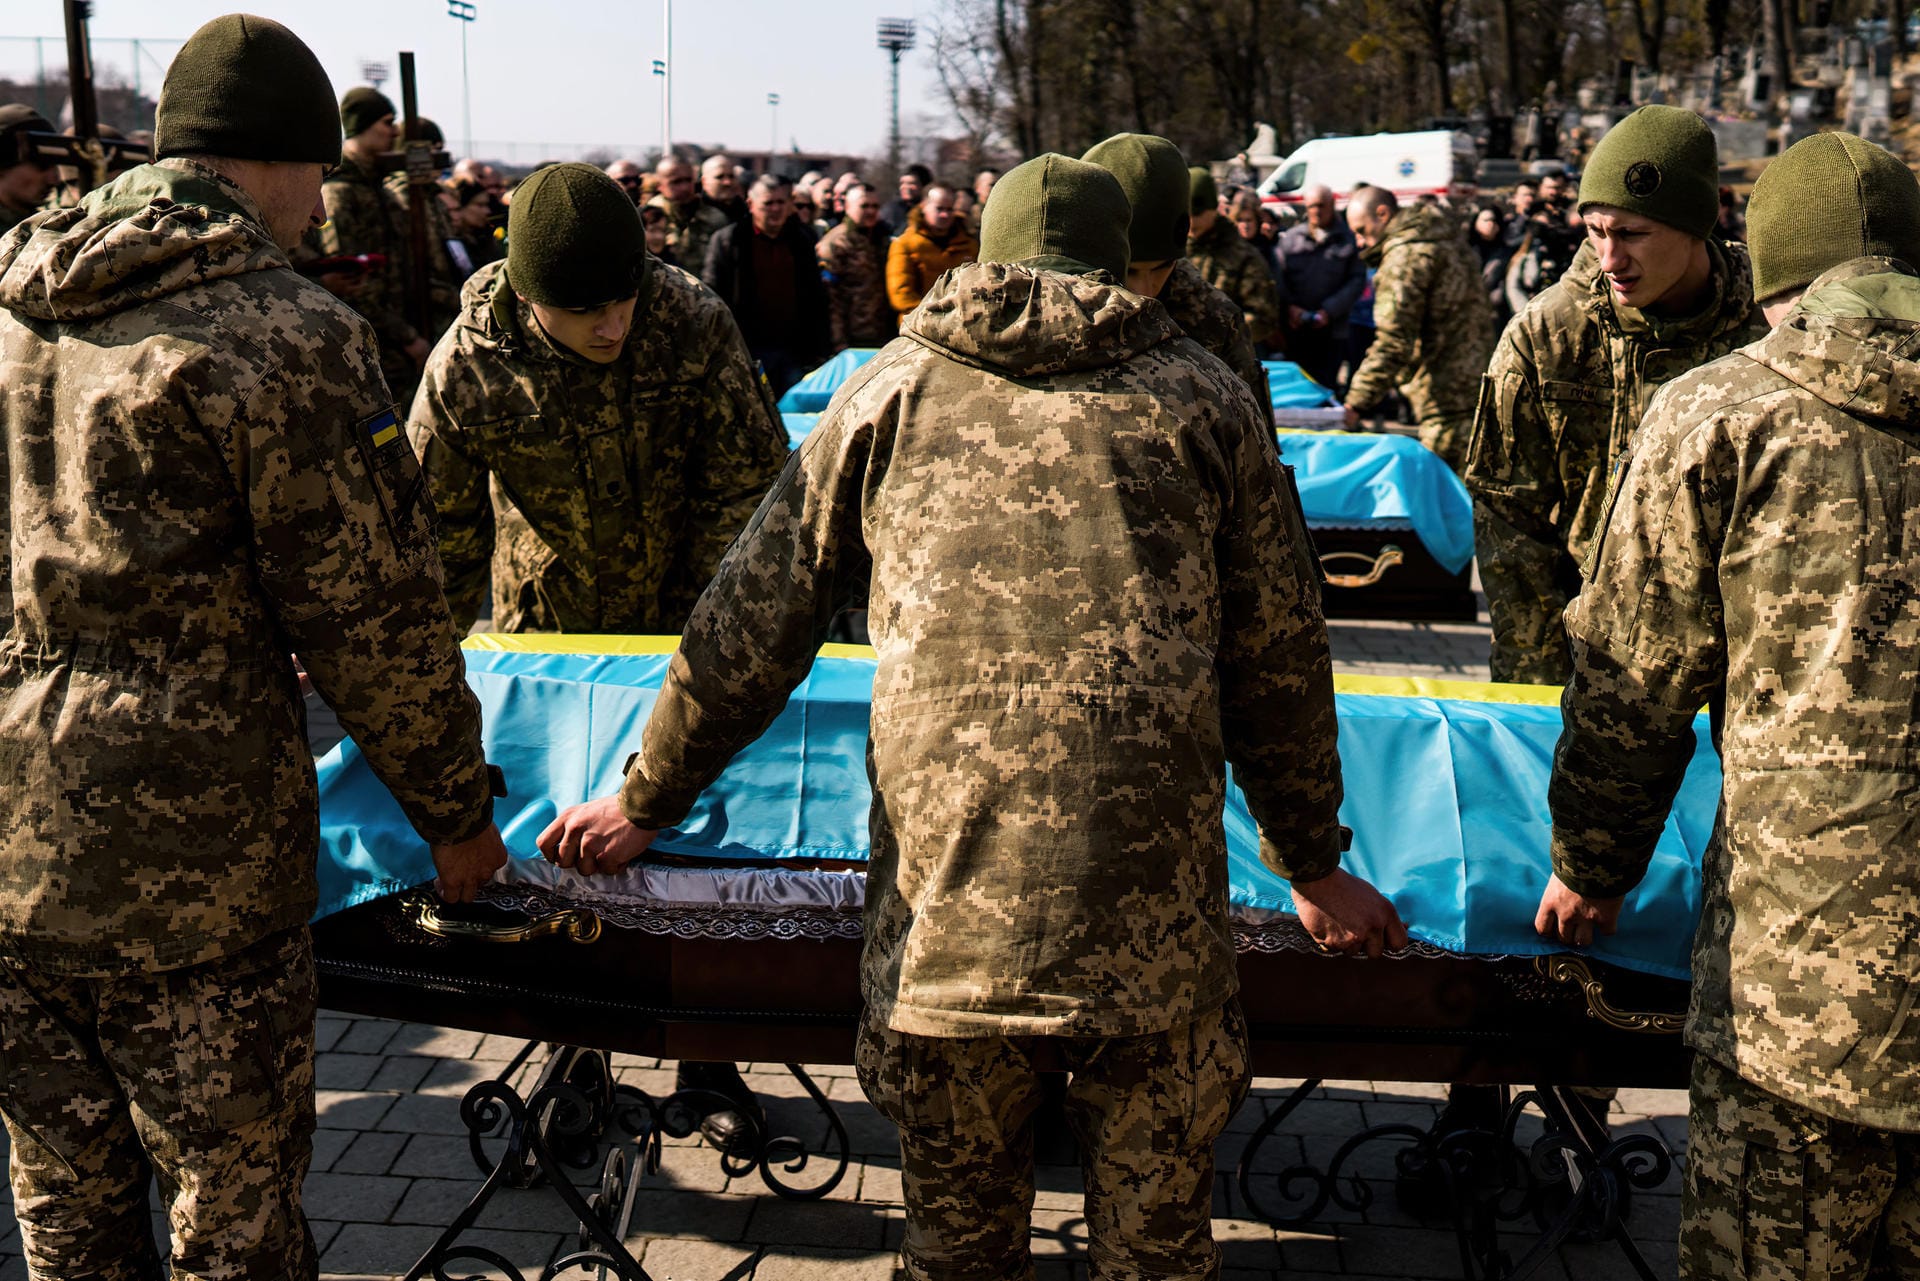 Beerdigung im Kriegsgebiet: Ukrainische Soldaten bedecken den Sarg eines Kameraden mit einer Nationalflagge während einer Trauerfeier. Bei dem russischen Angriff auf das Militärlager Jaworiw waren Dutzende Menschen getötet worden.